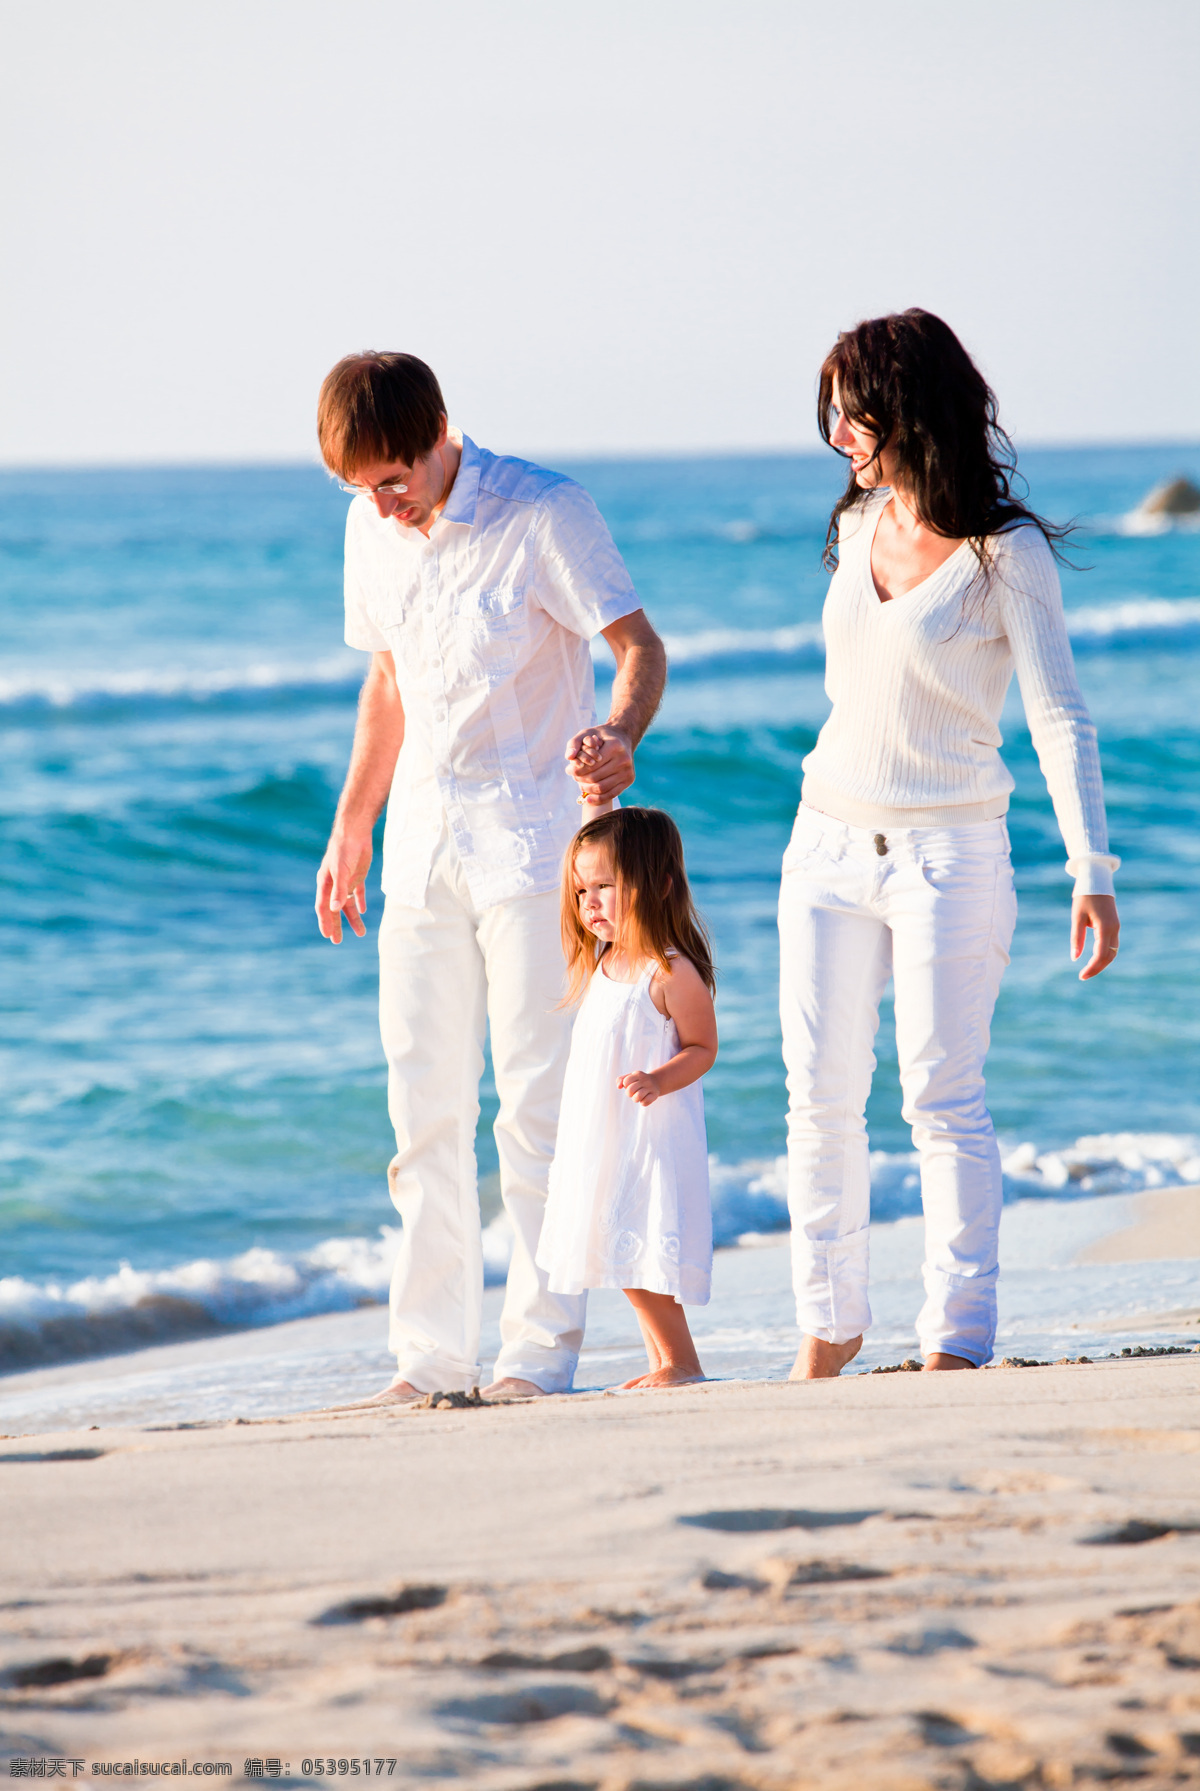 沙滩 上 领 孩子 父母 领着 女孩 白色衣服 海边 节日庆典 生活百科